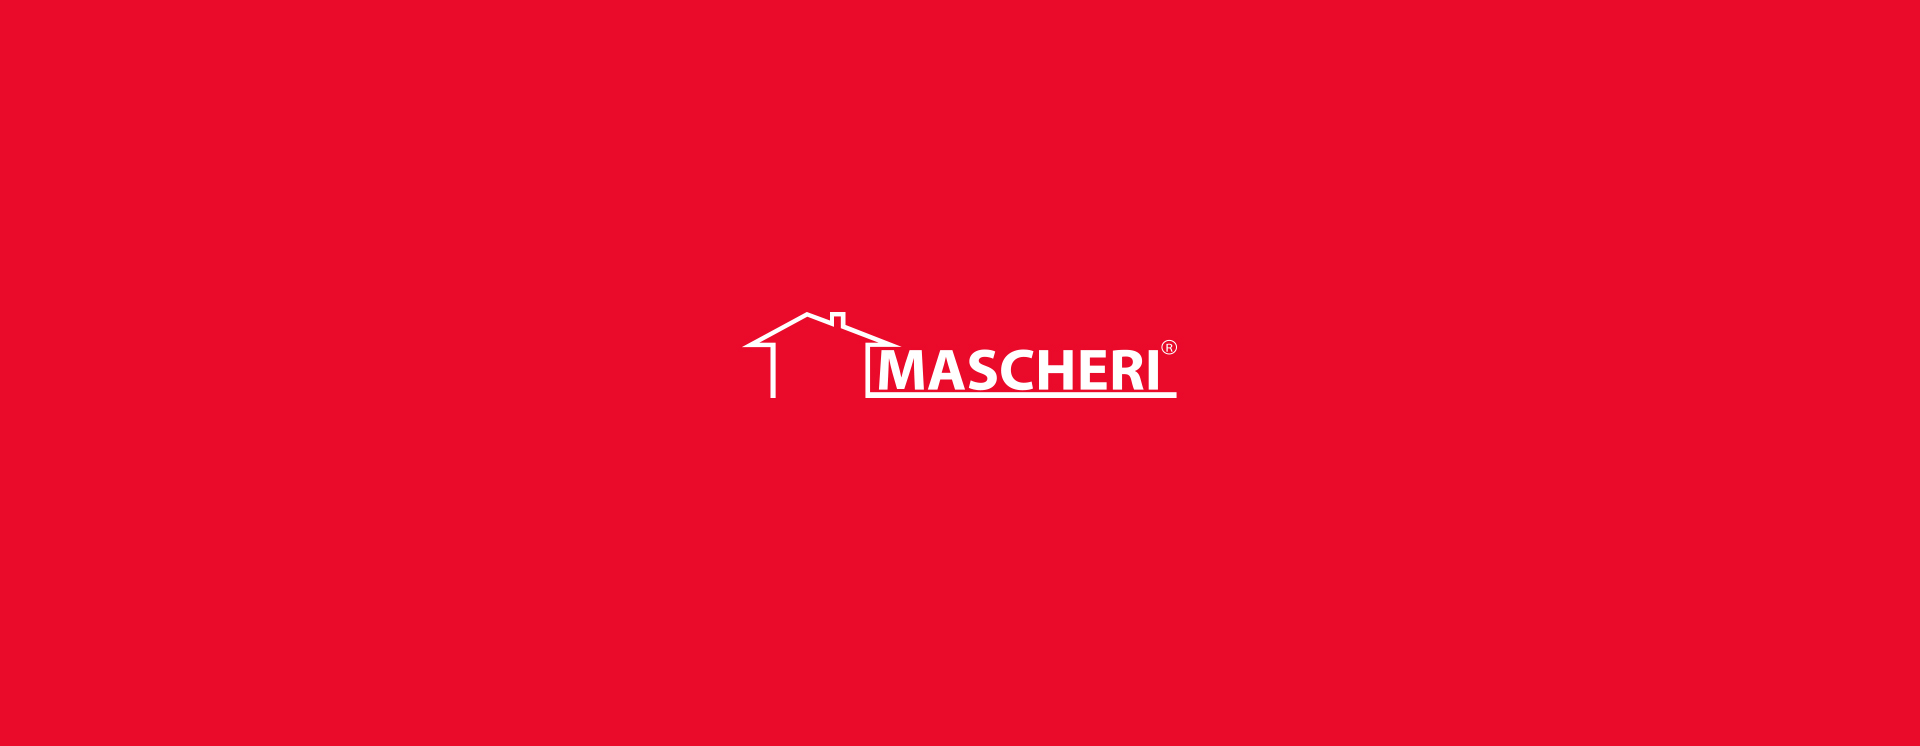 mascheri_logo